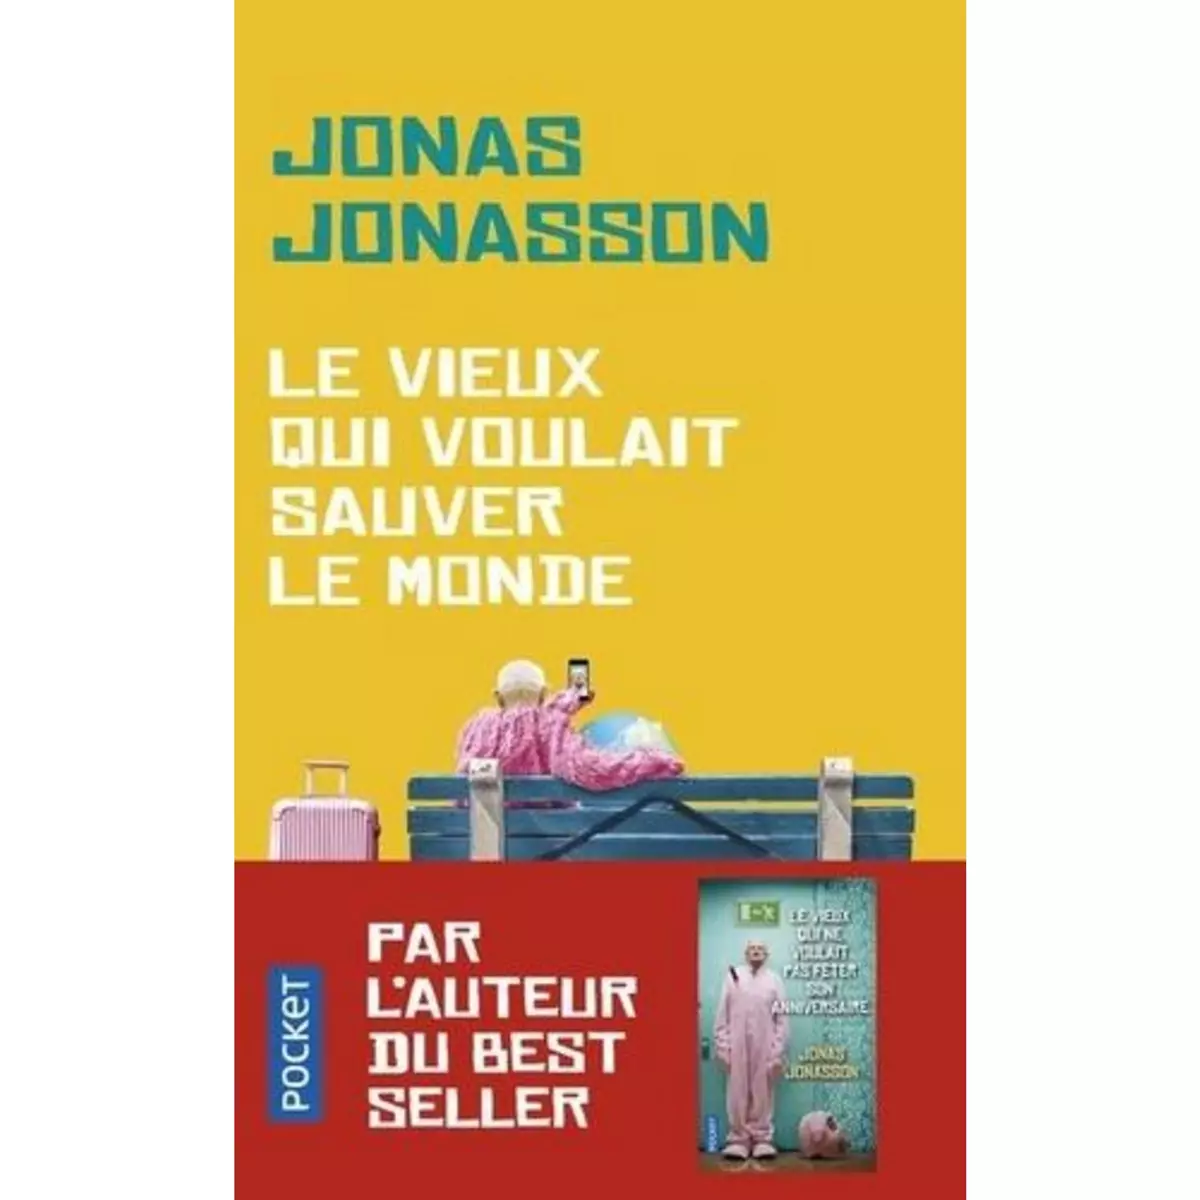  LE VIEUX QUI VOULAIT SAUVER LE MONDE, Jonasson Jonas